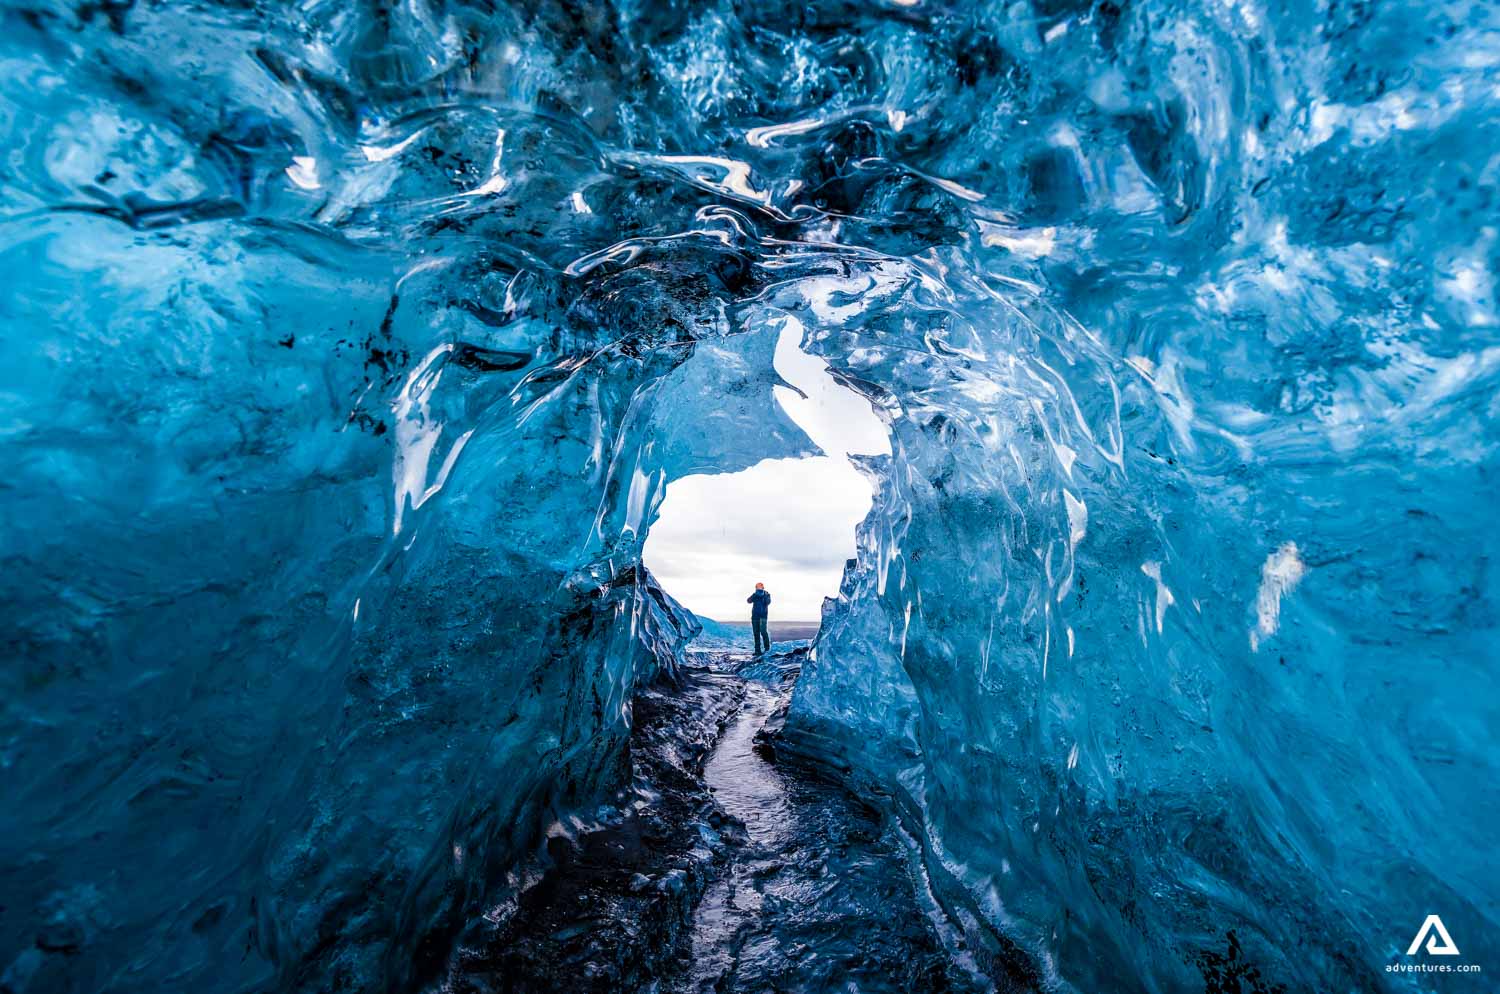 https://adventures.com/media/6260/man-standing-in-jokulsarlon-glacier-ice-cave.jpg